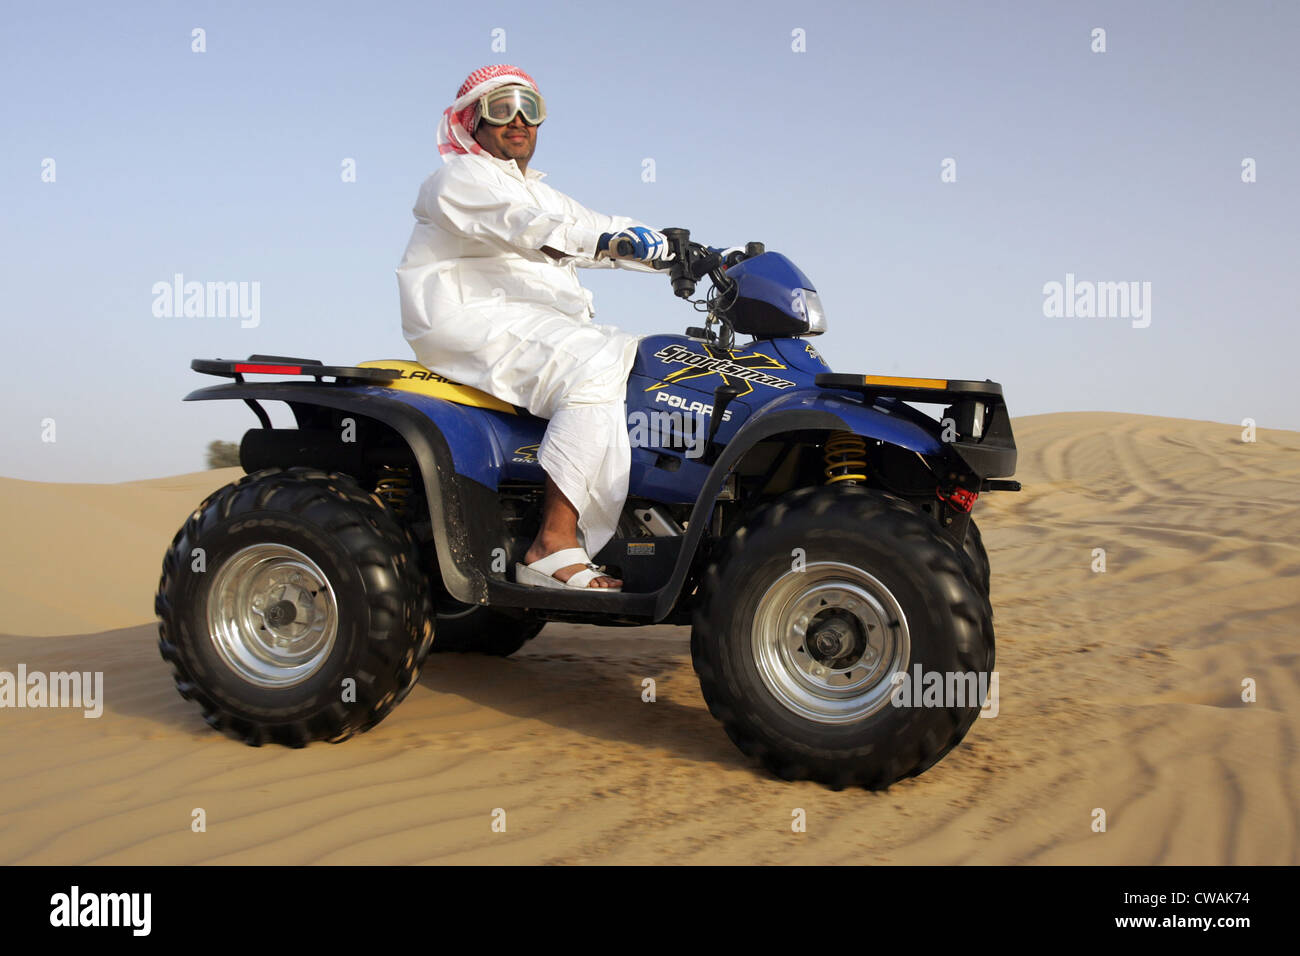 Dubaï, riders quad dans le désert Banque D'Images